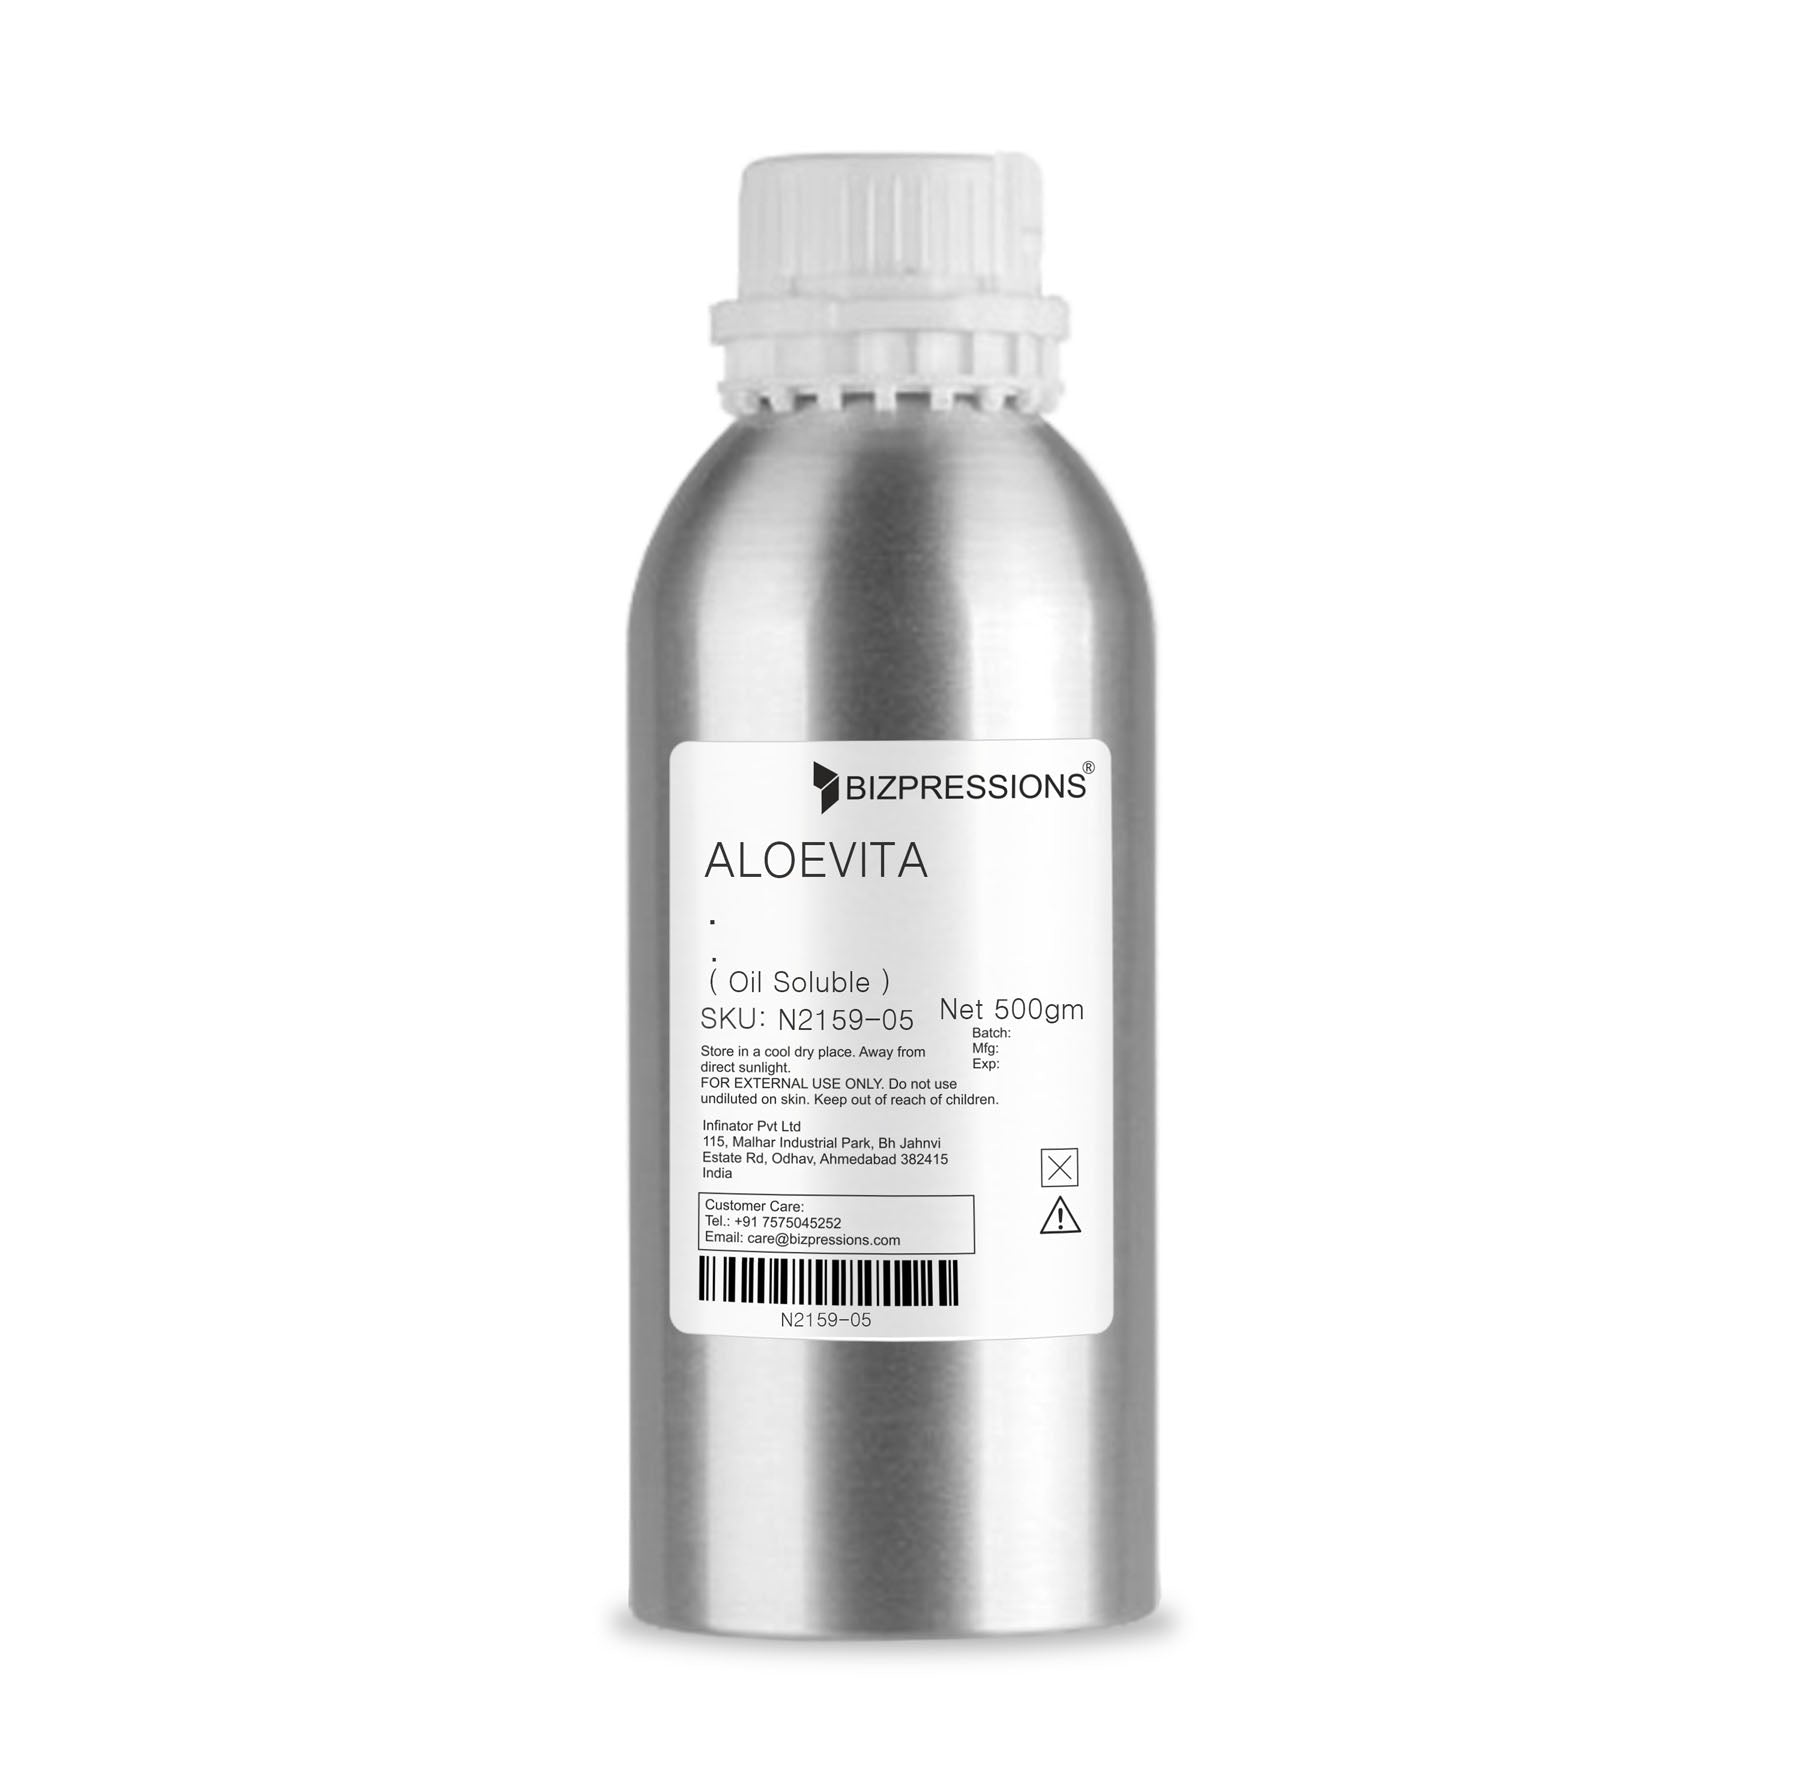 ALOEVITA - Fragrance ( Oil Soluble ) - 500 gm